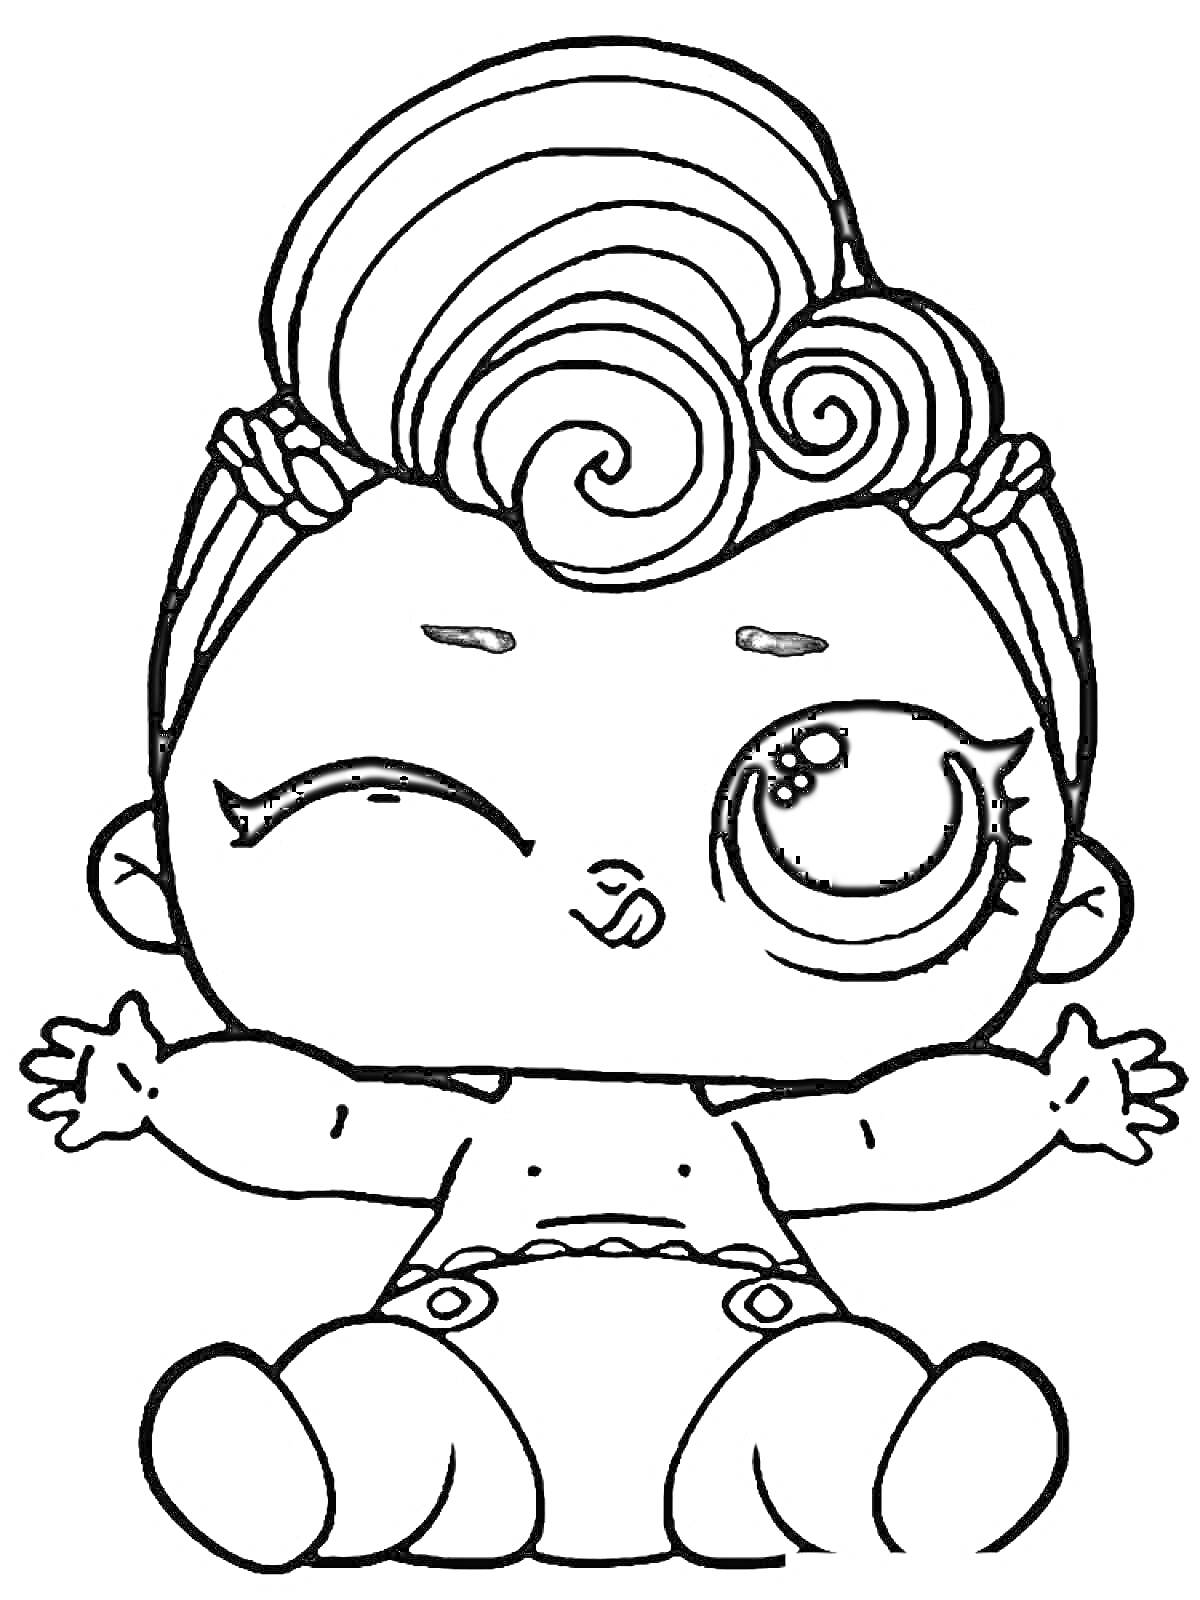 Раскраска Малыш с прической в форме завитков, моргающий одним глазом, сидящий в подгузниках